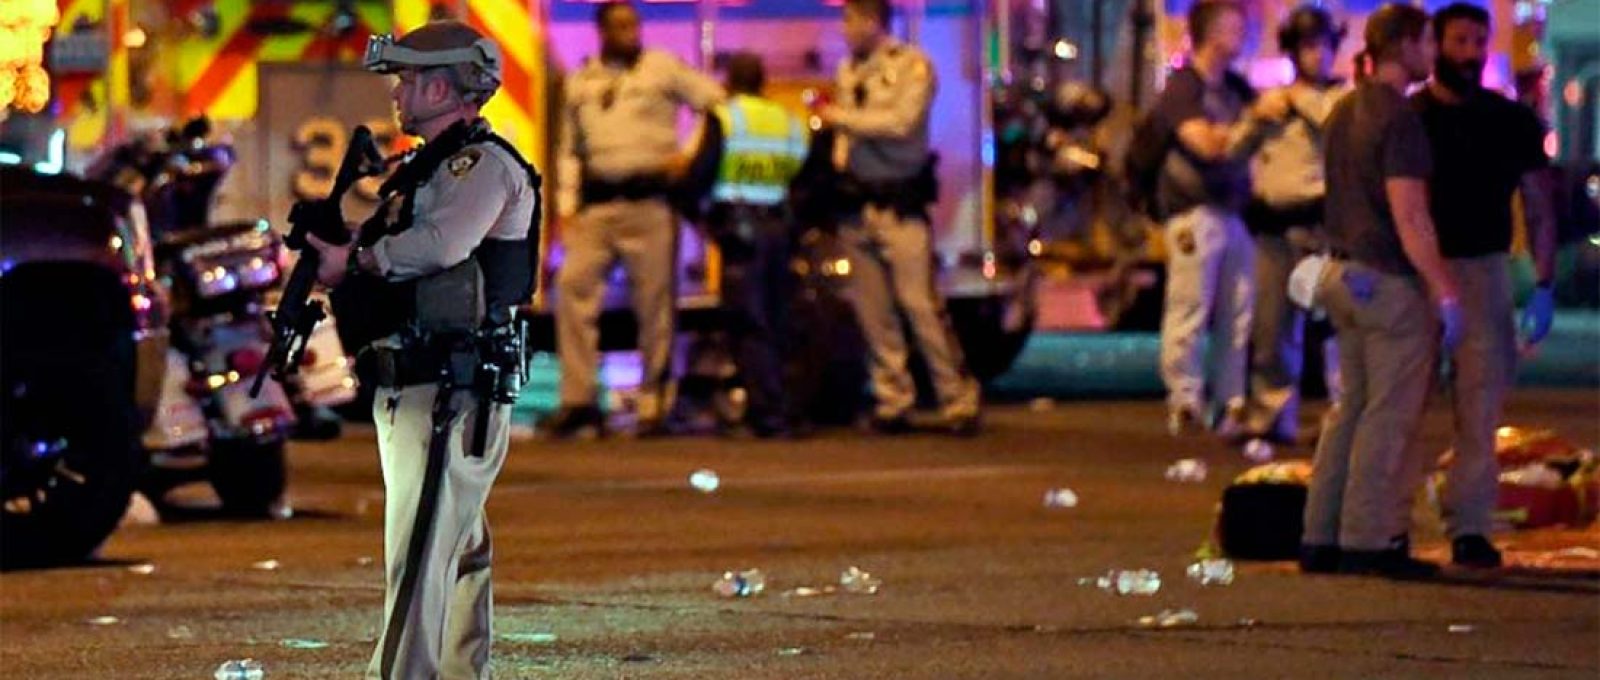 Policiais atuando durante o incidente em Las Vegas em 2017 (ABC News).